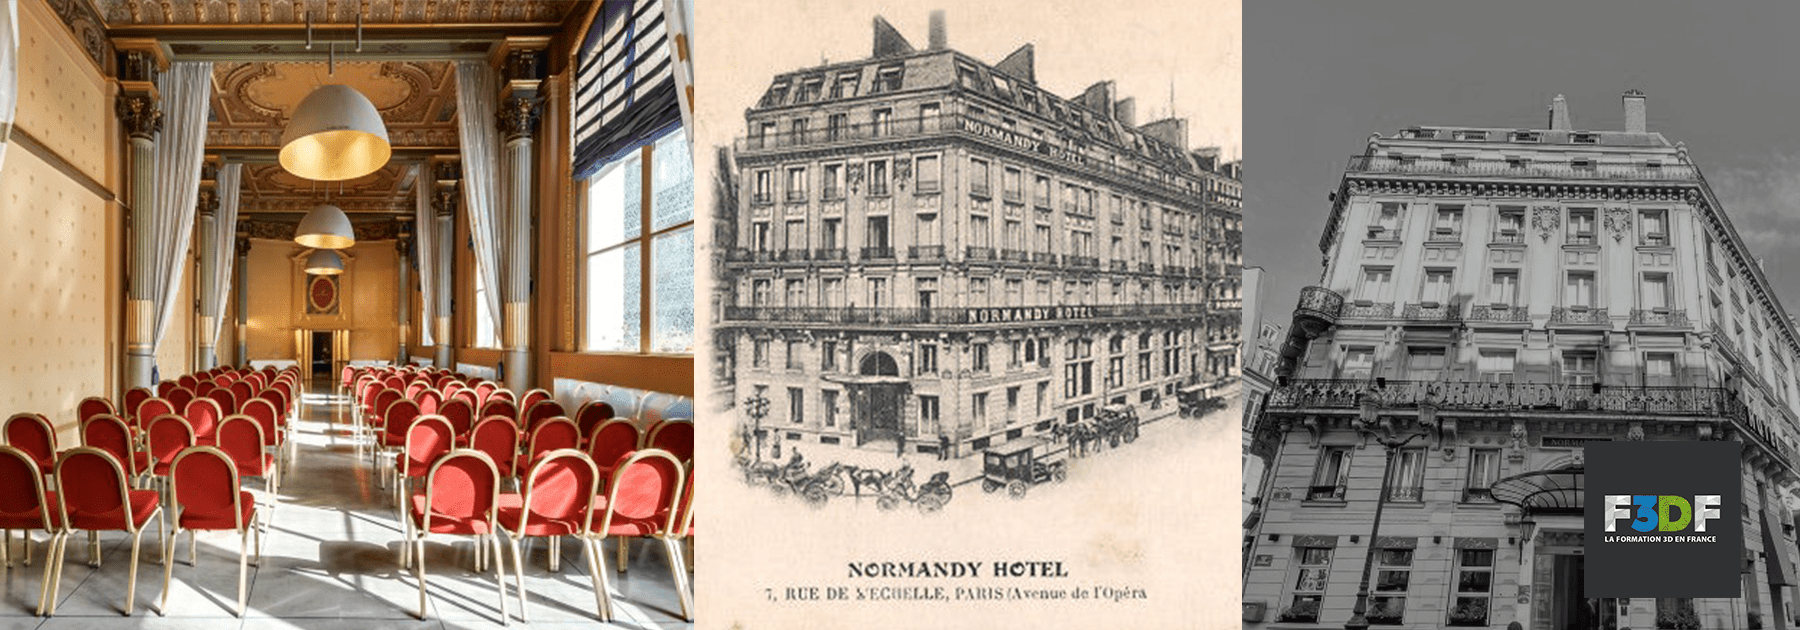 Hotel Normandy : un nouveau cadre de prestige pour les formations F3DF